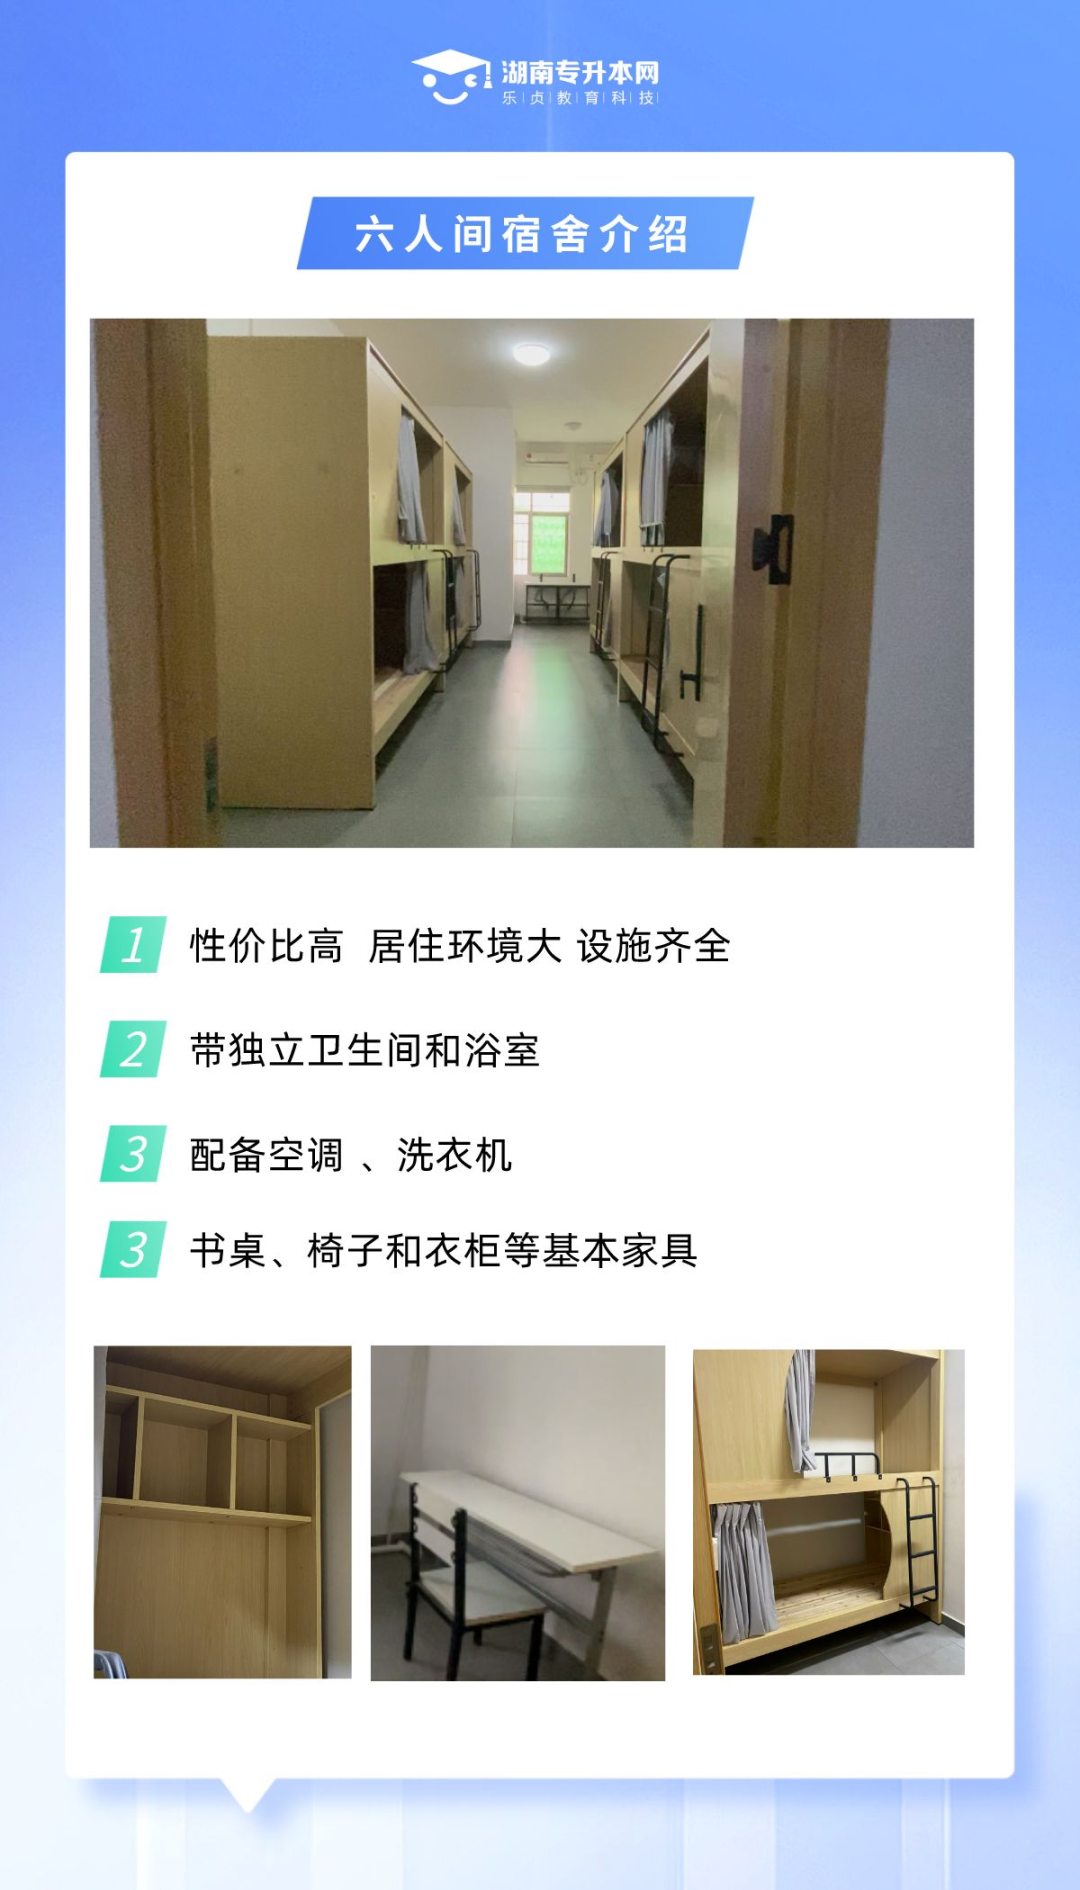 乐贞教育科技学员宿舍介绍(图5)